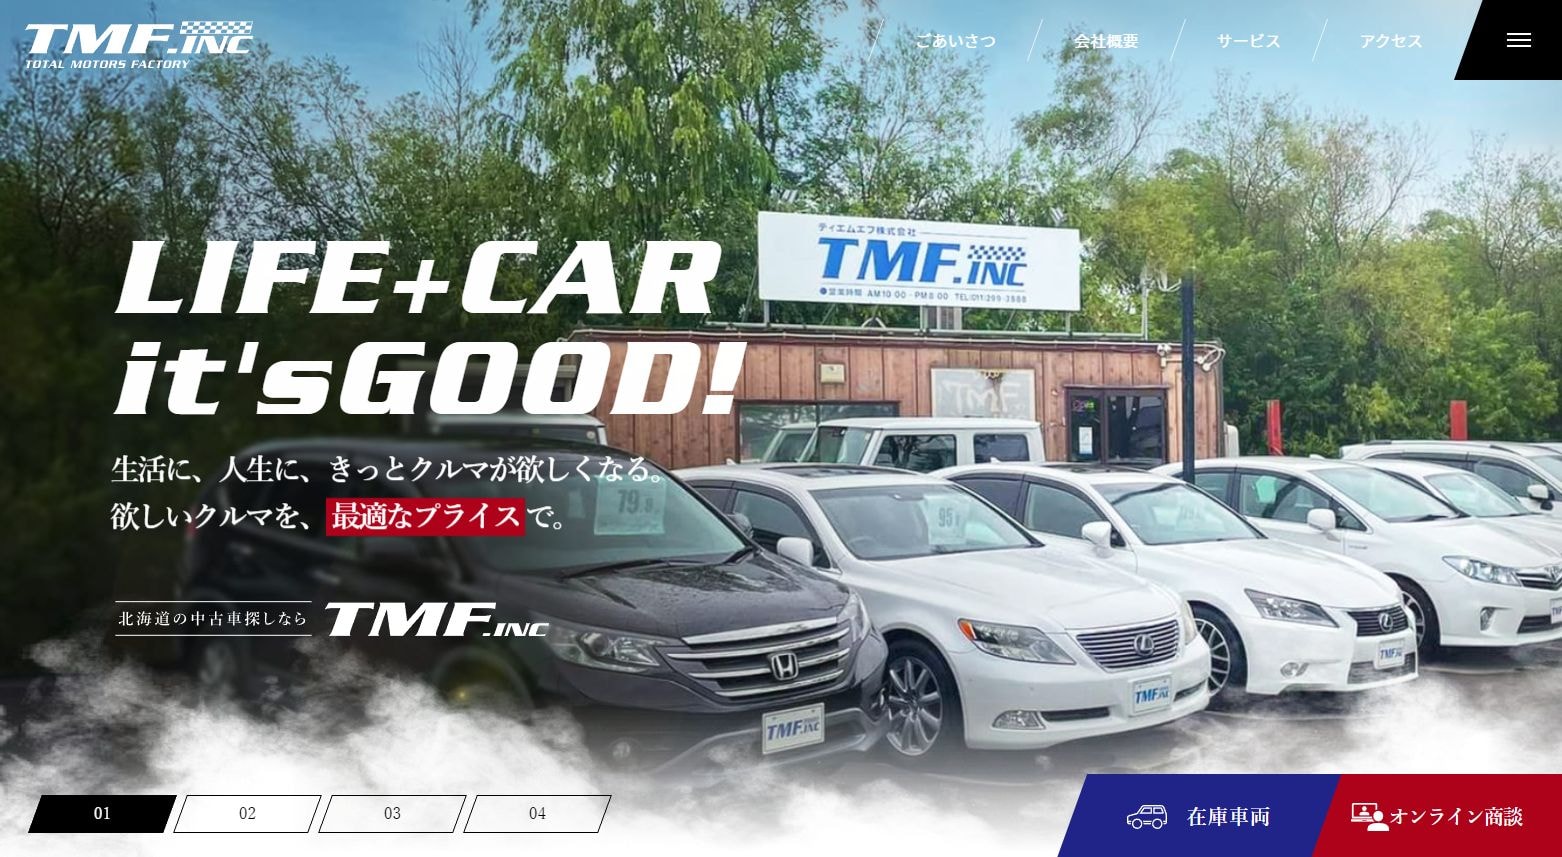 「中古車販売買取 TMF株式会社」様サイトのページ画像1